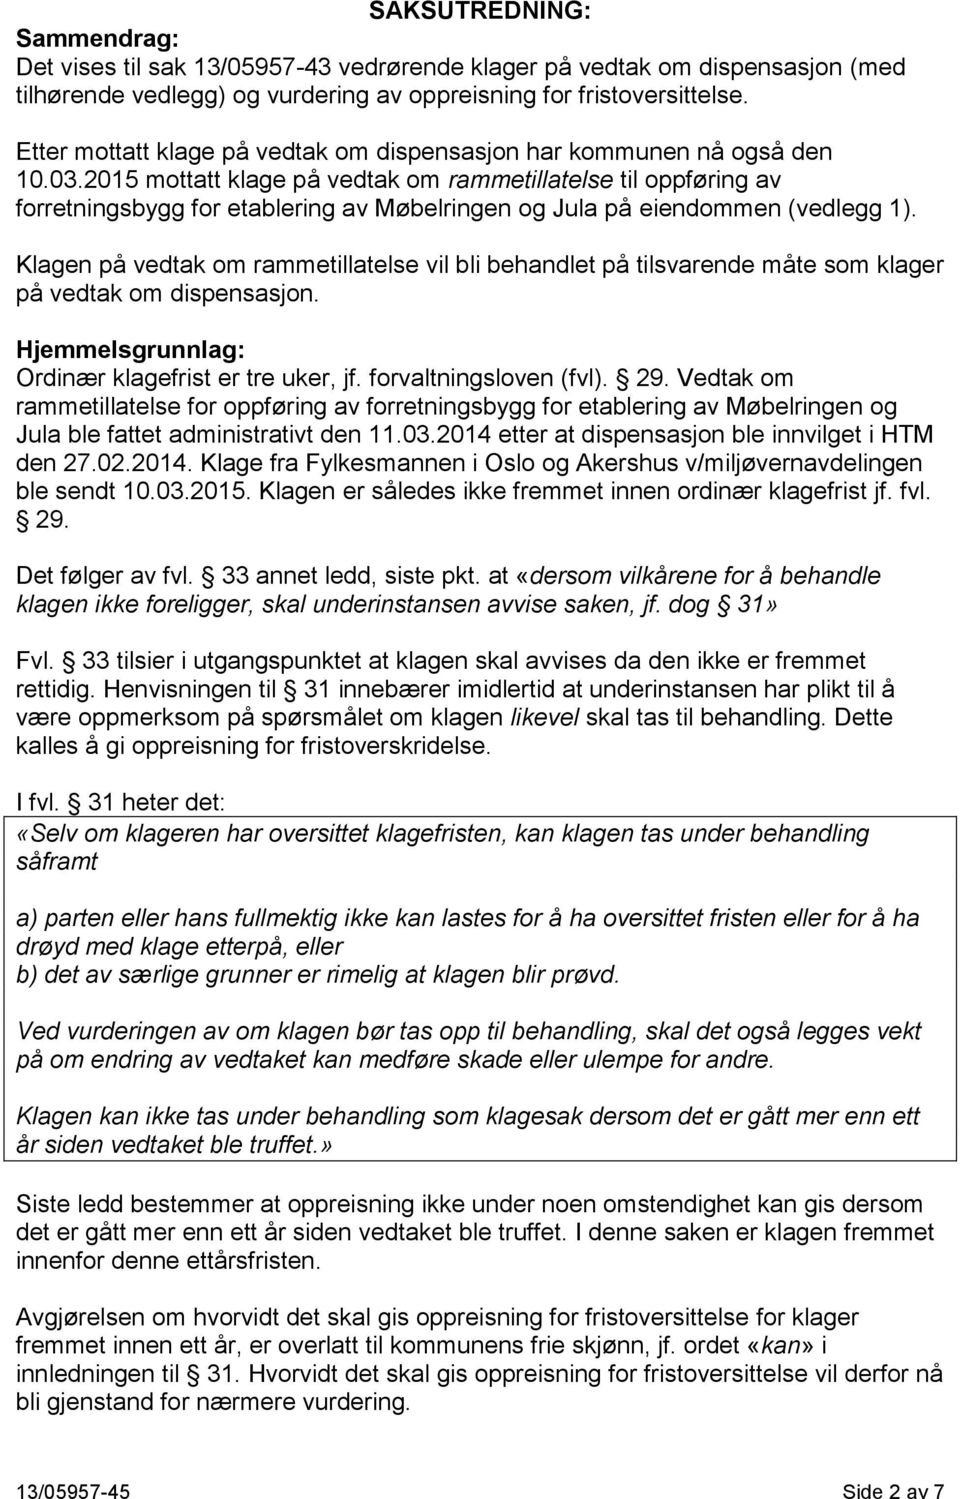 2015 mottatt klage på vedtak om rammetillatelse til oppføring av forretningsbygg for etablering av Møbelringen og Jula på eiendommen (vedlegg 1).